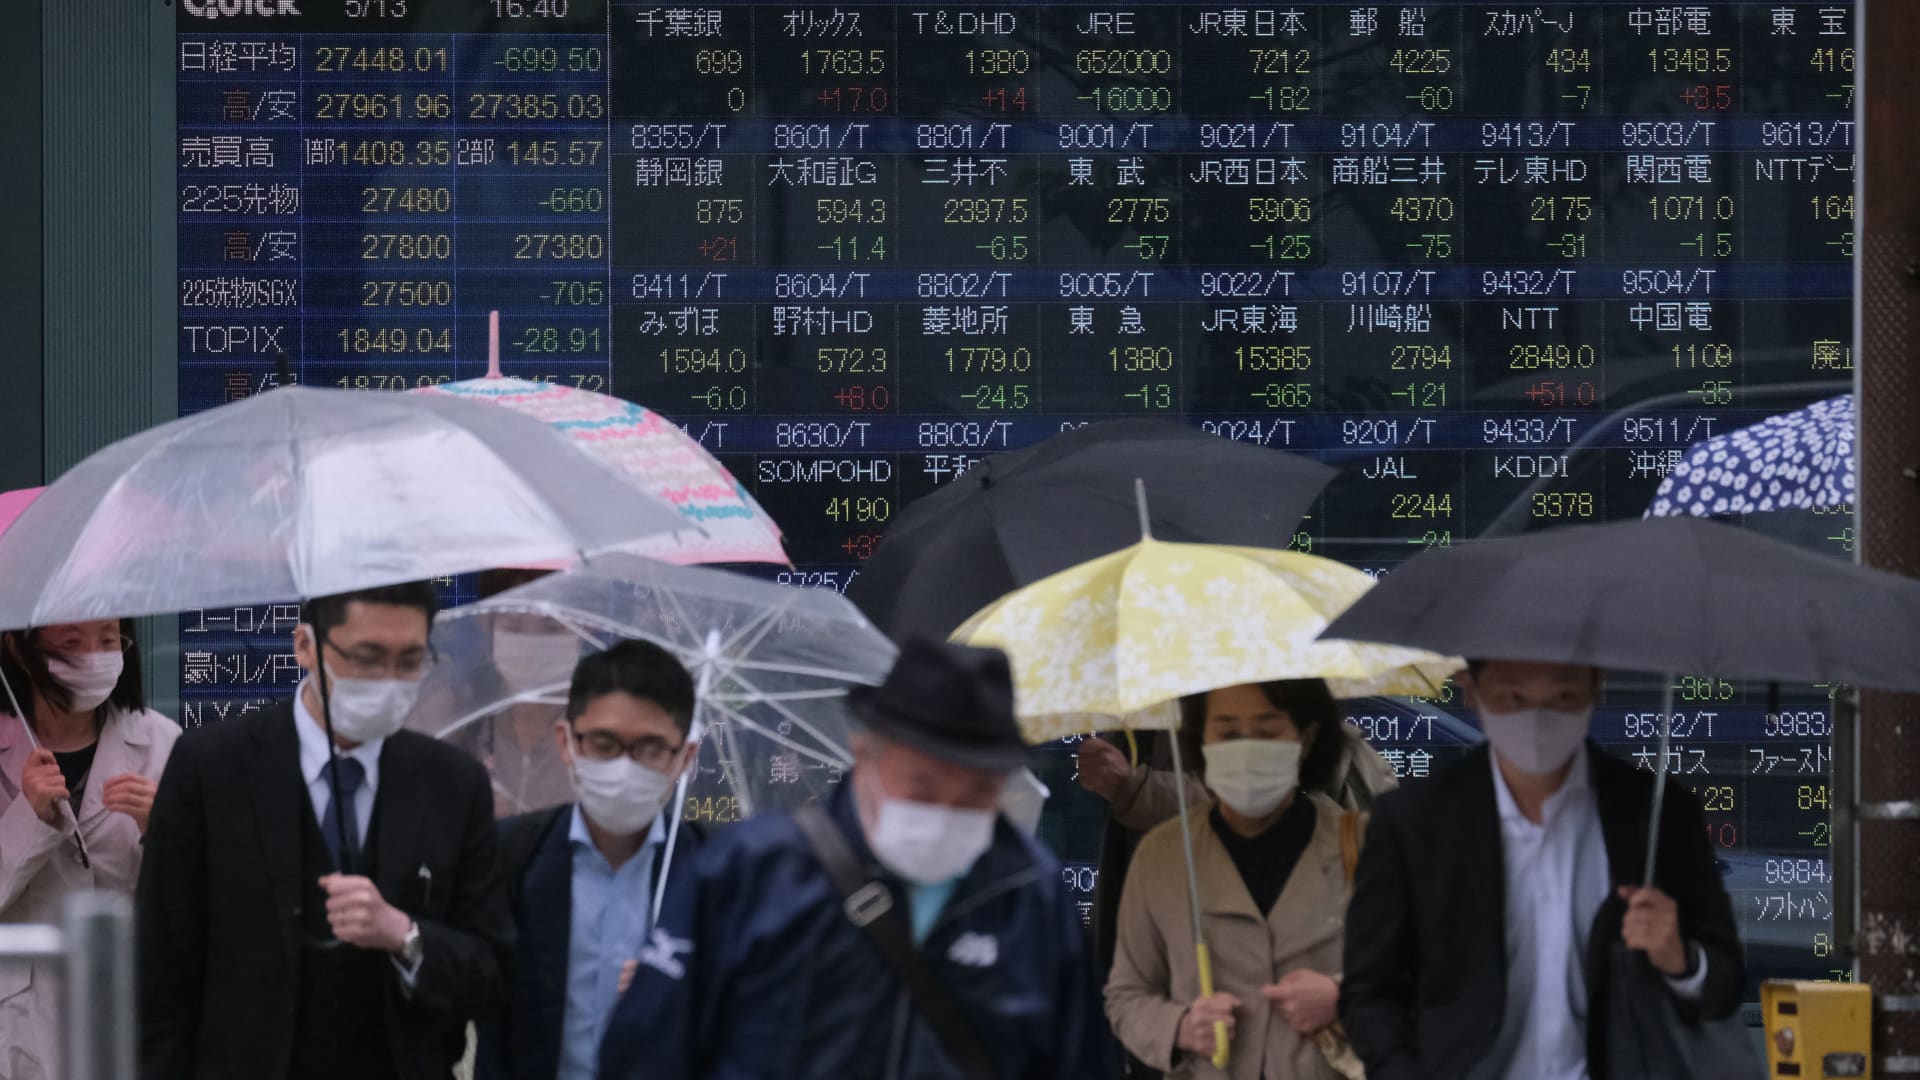 Asia markets rise, Hang Seng index up 2% after Wall Street rebound